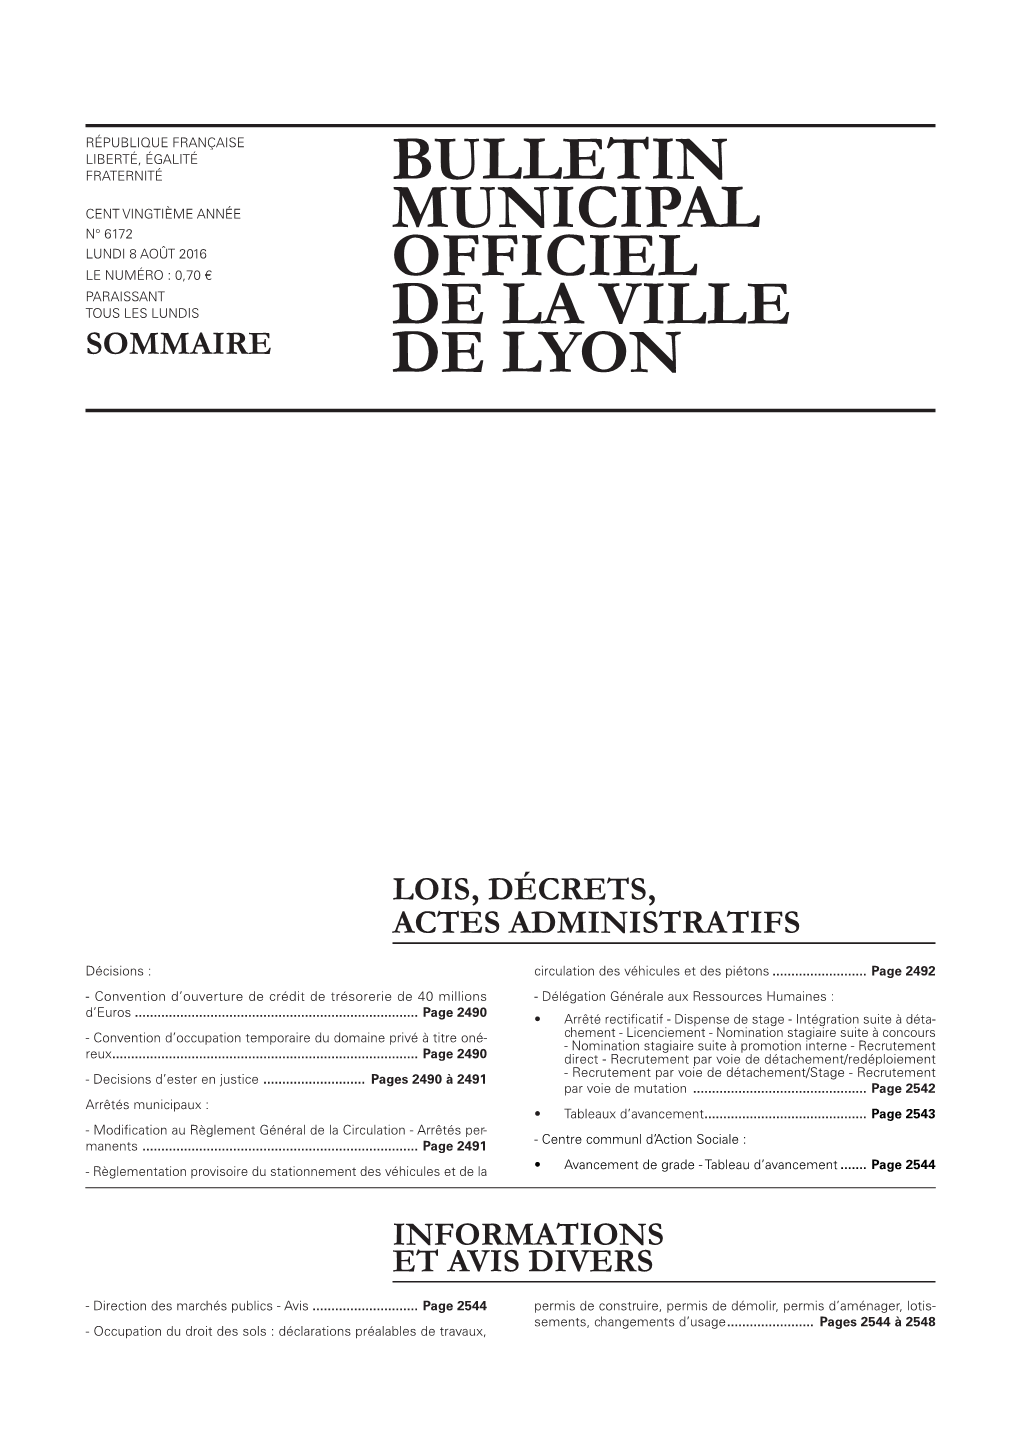 BULLETIN MUNICIPAL OFFICIEL DE LA VILLE DE LYON 8 Août 2016 LOIS, DÉCRETS, ACTES ADMINISTRATIFS